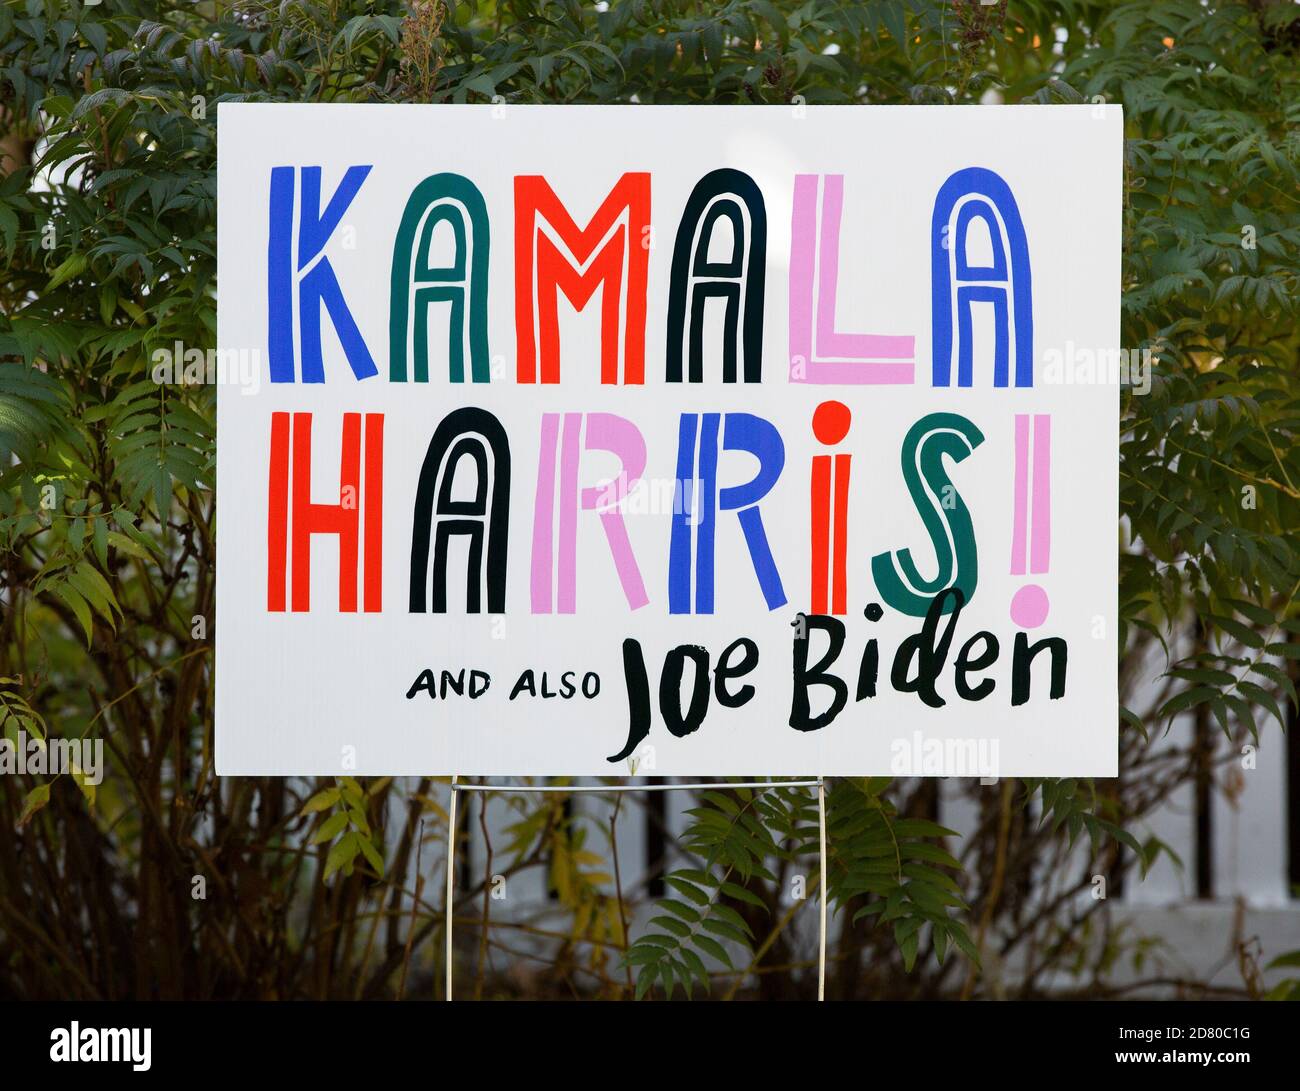 2020 segno del cantiere presidenziale per i democratici Kamala Harris e Joe Biden Foto Stock